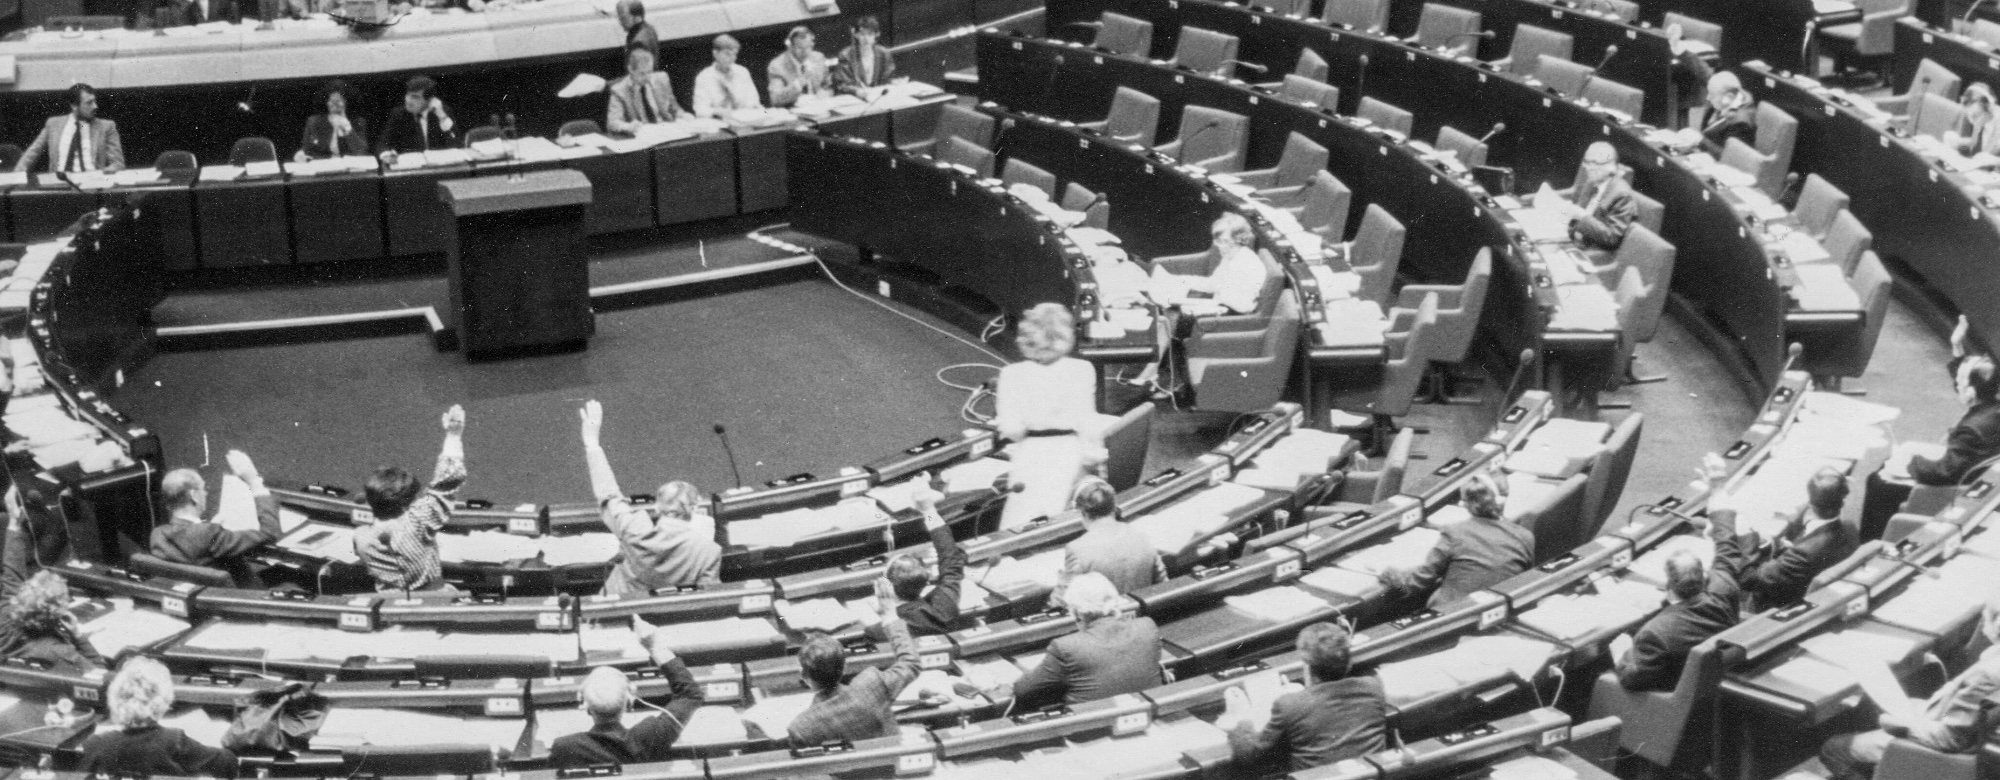 European Parliament (before the internet)